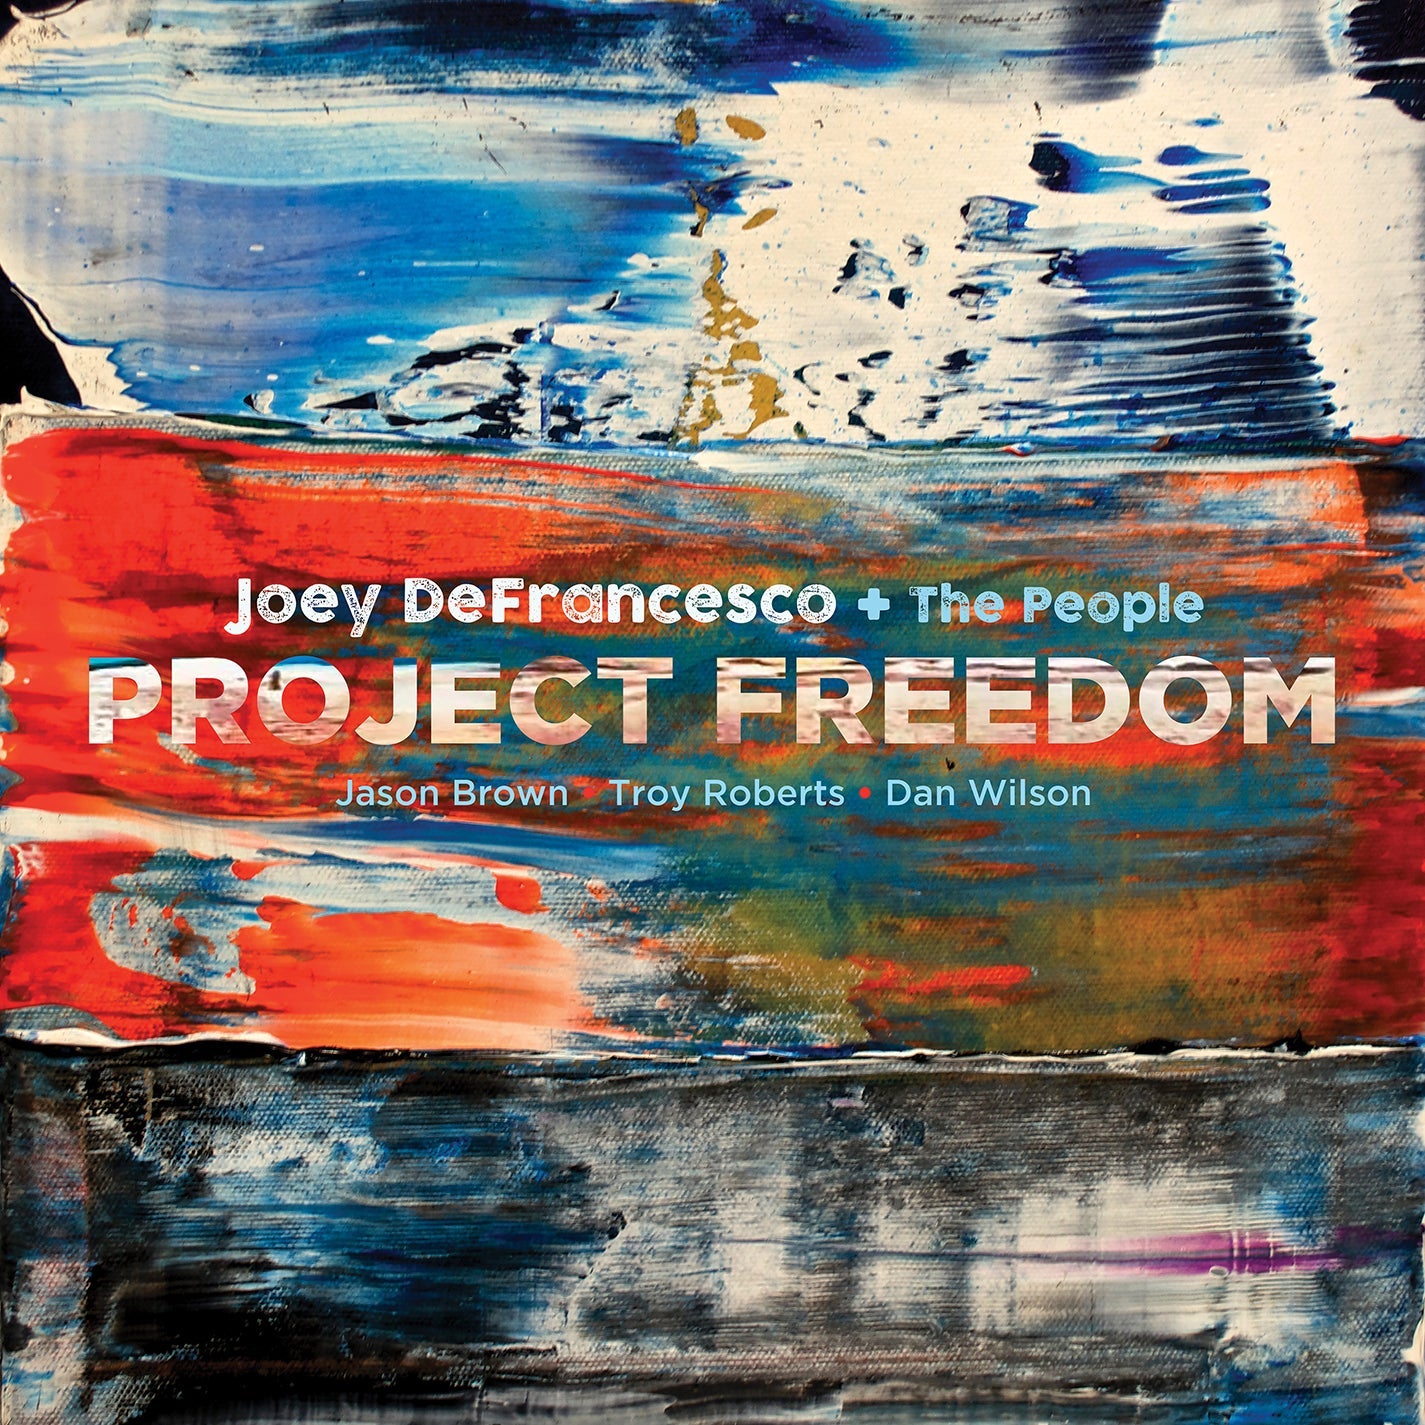 Project Freedom / Joey DeFrancesco [2 LPs]